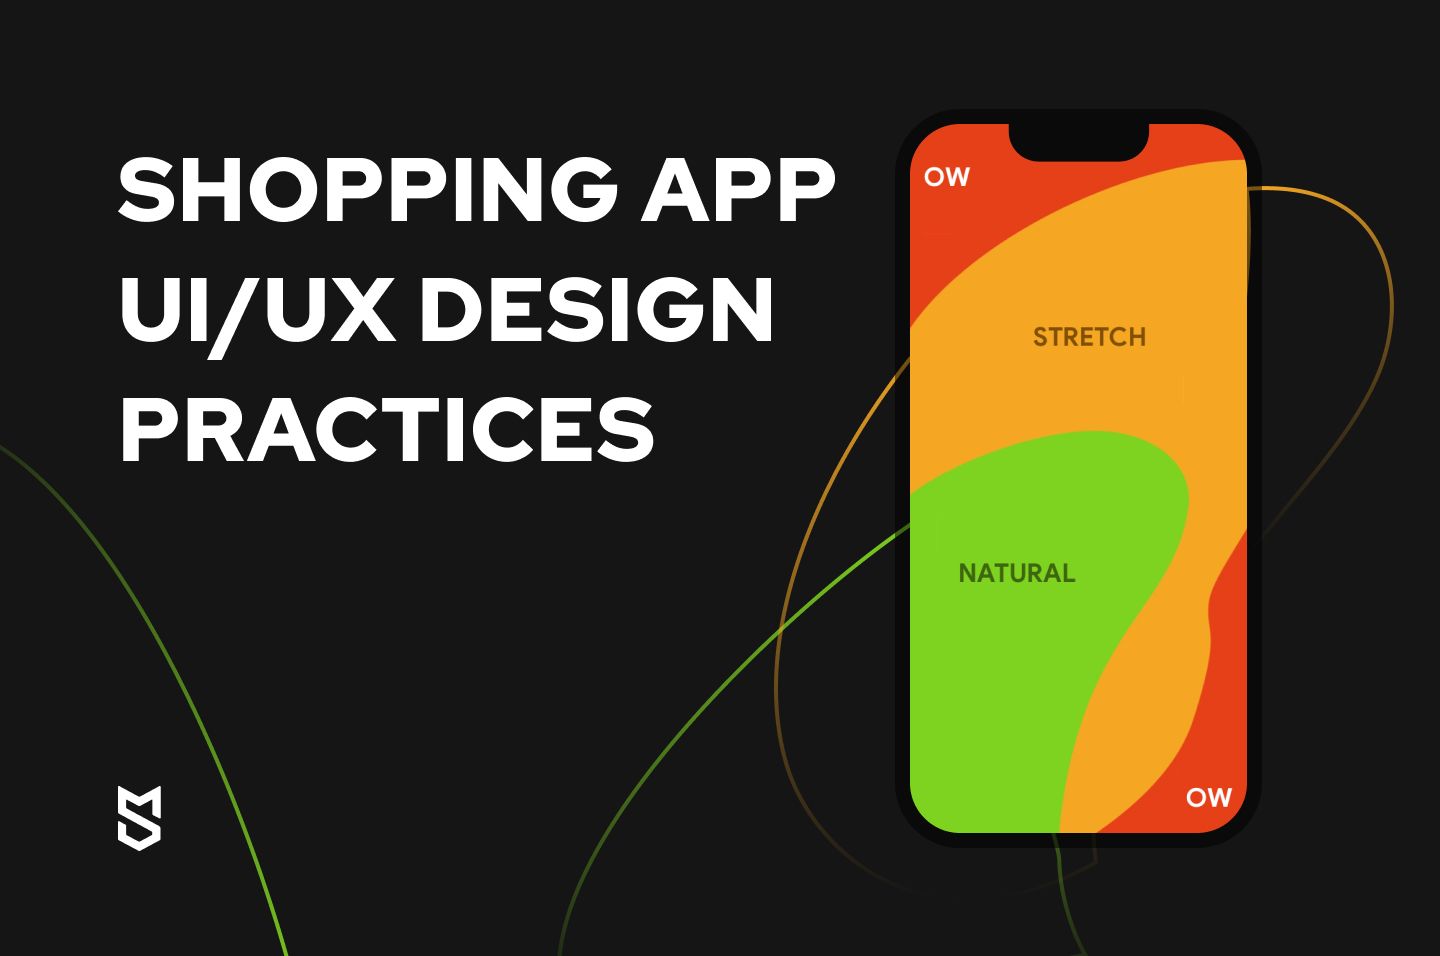 UI/UX design practices